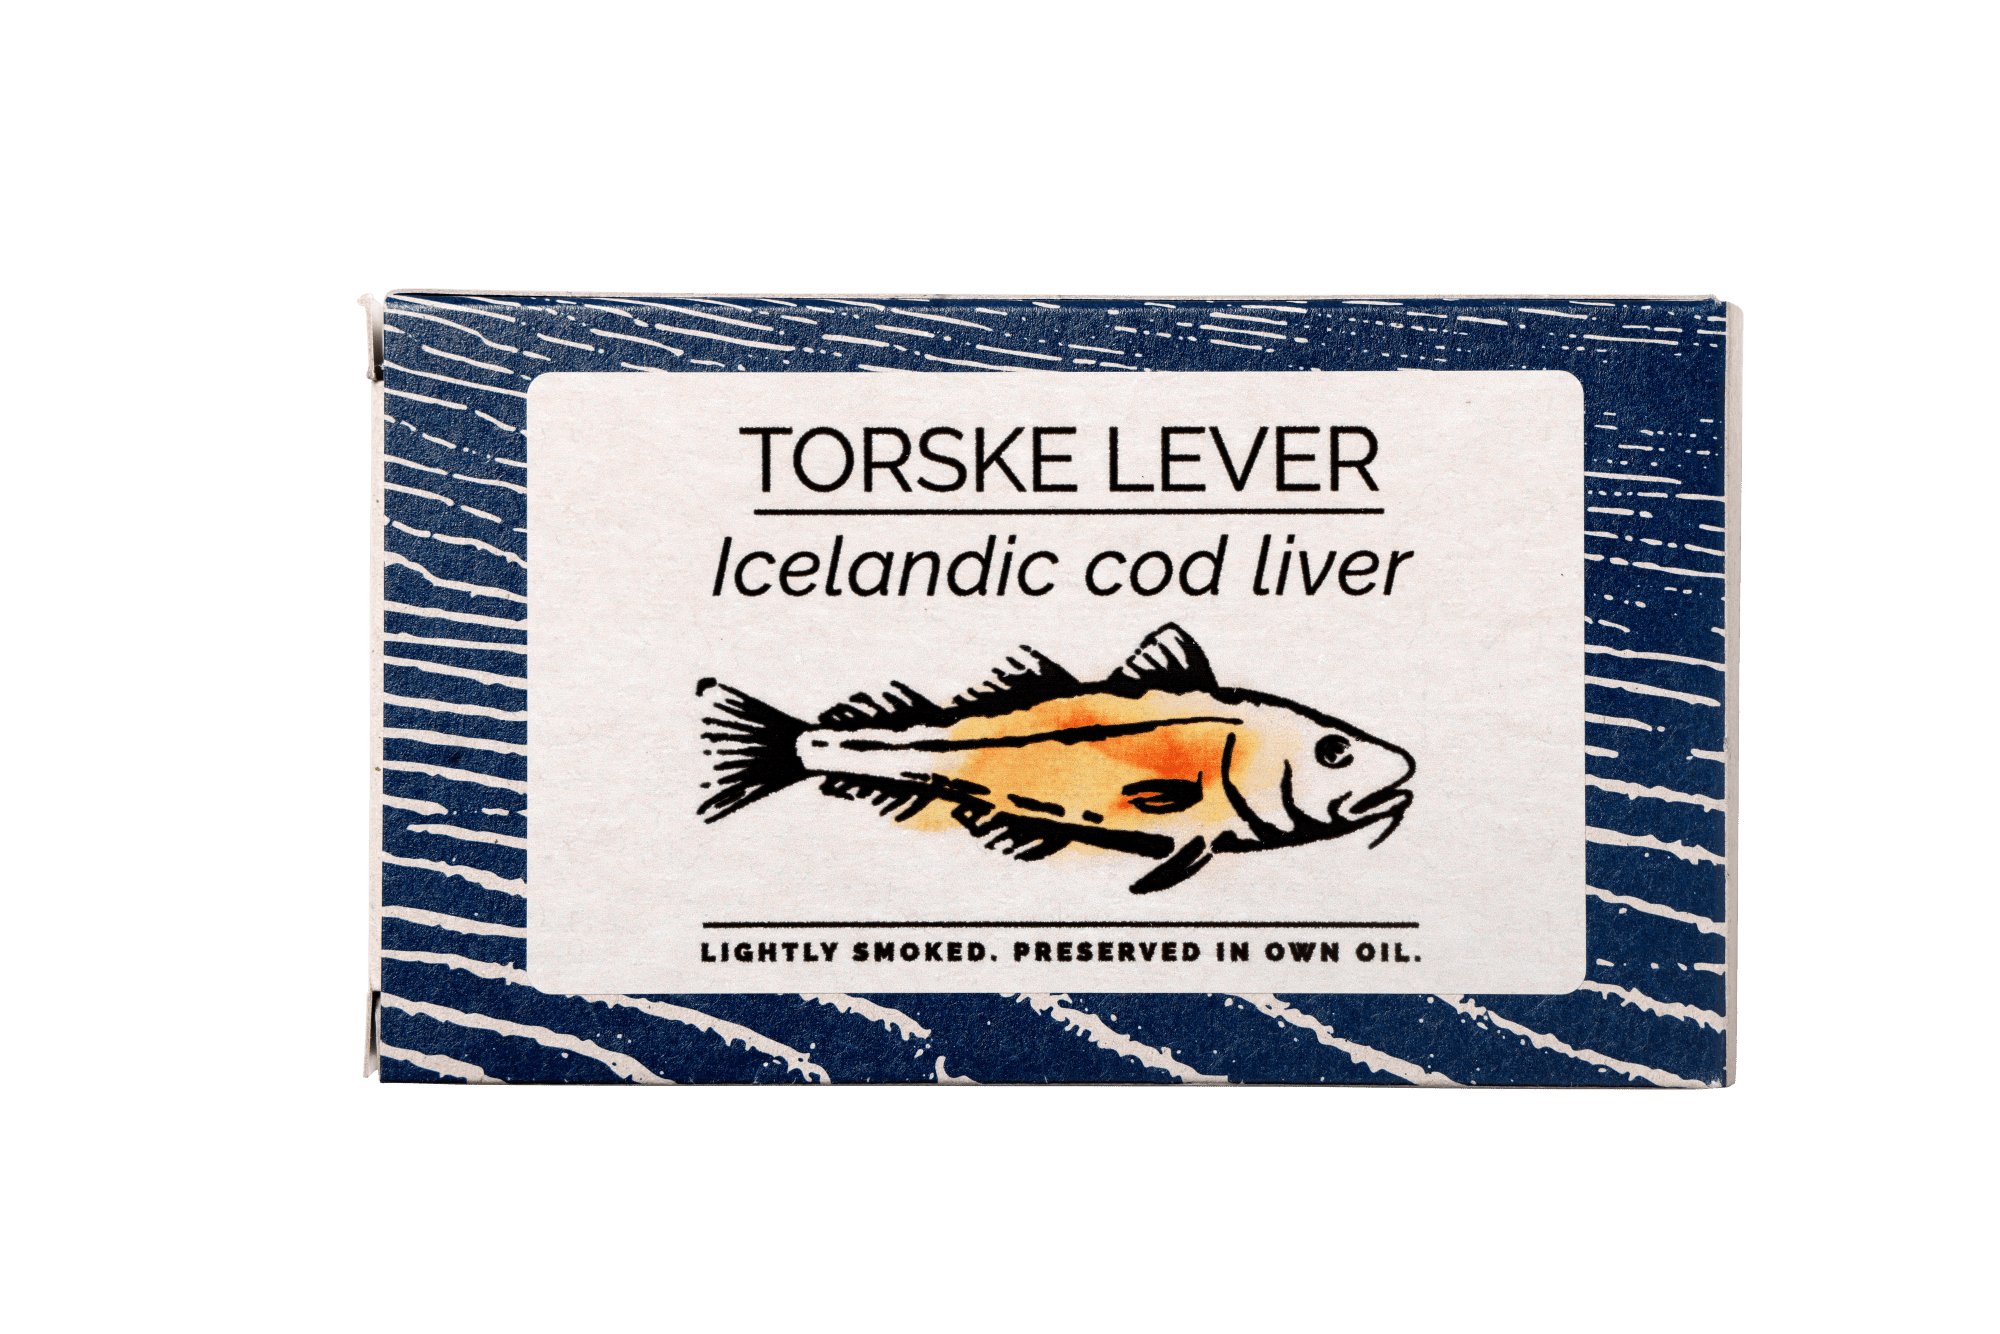 TORSKE LEVER - FANGST